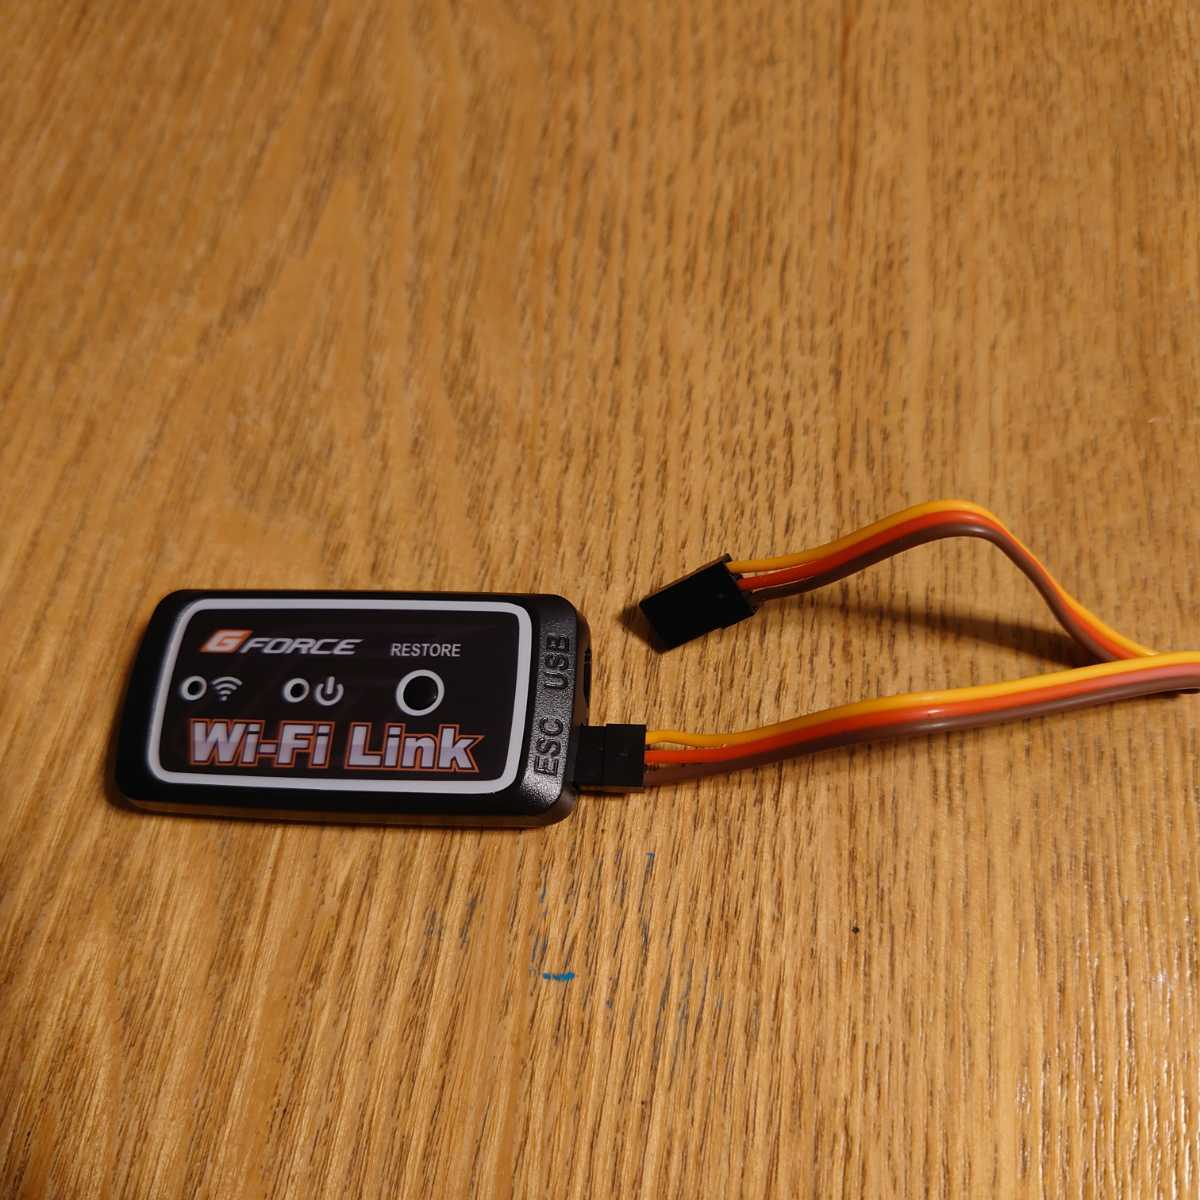 ジーフォース Wi-Fi LINK gフォース ts90 ts120